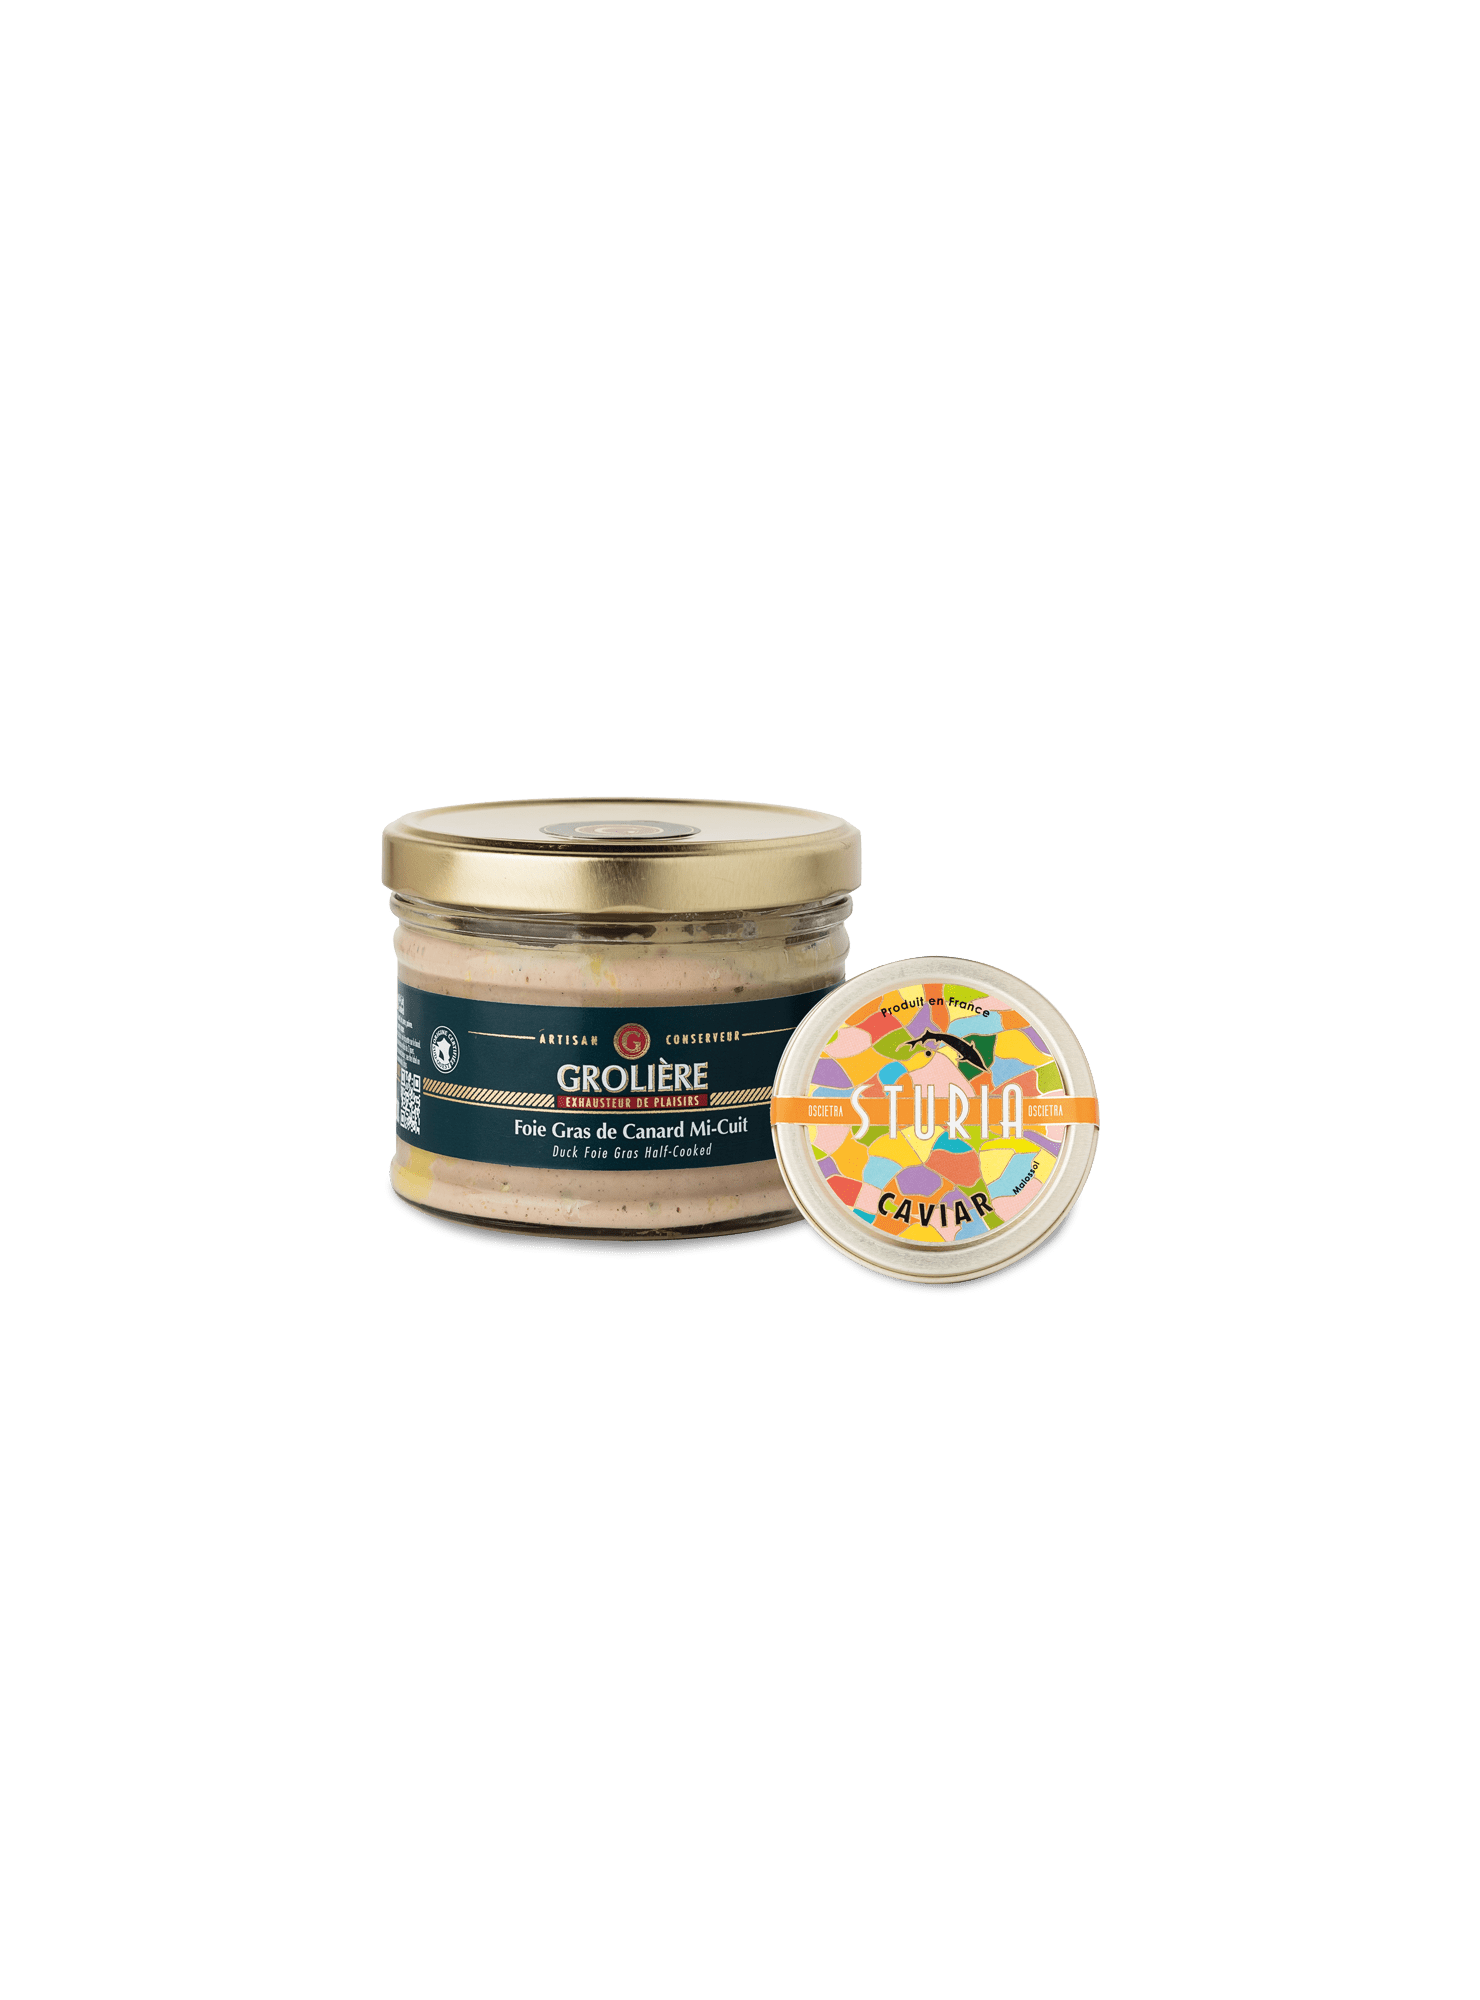 Foie-Gras-Canard-Mi-Cuit-300-Caviar-Oscietre-50